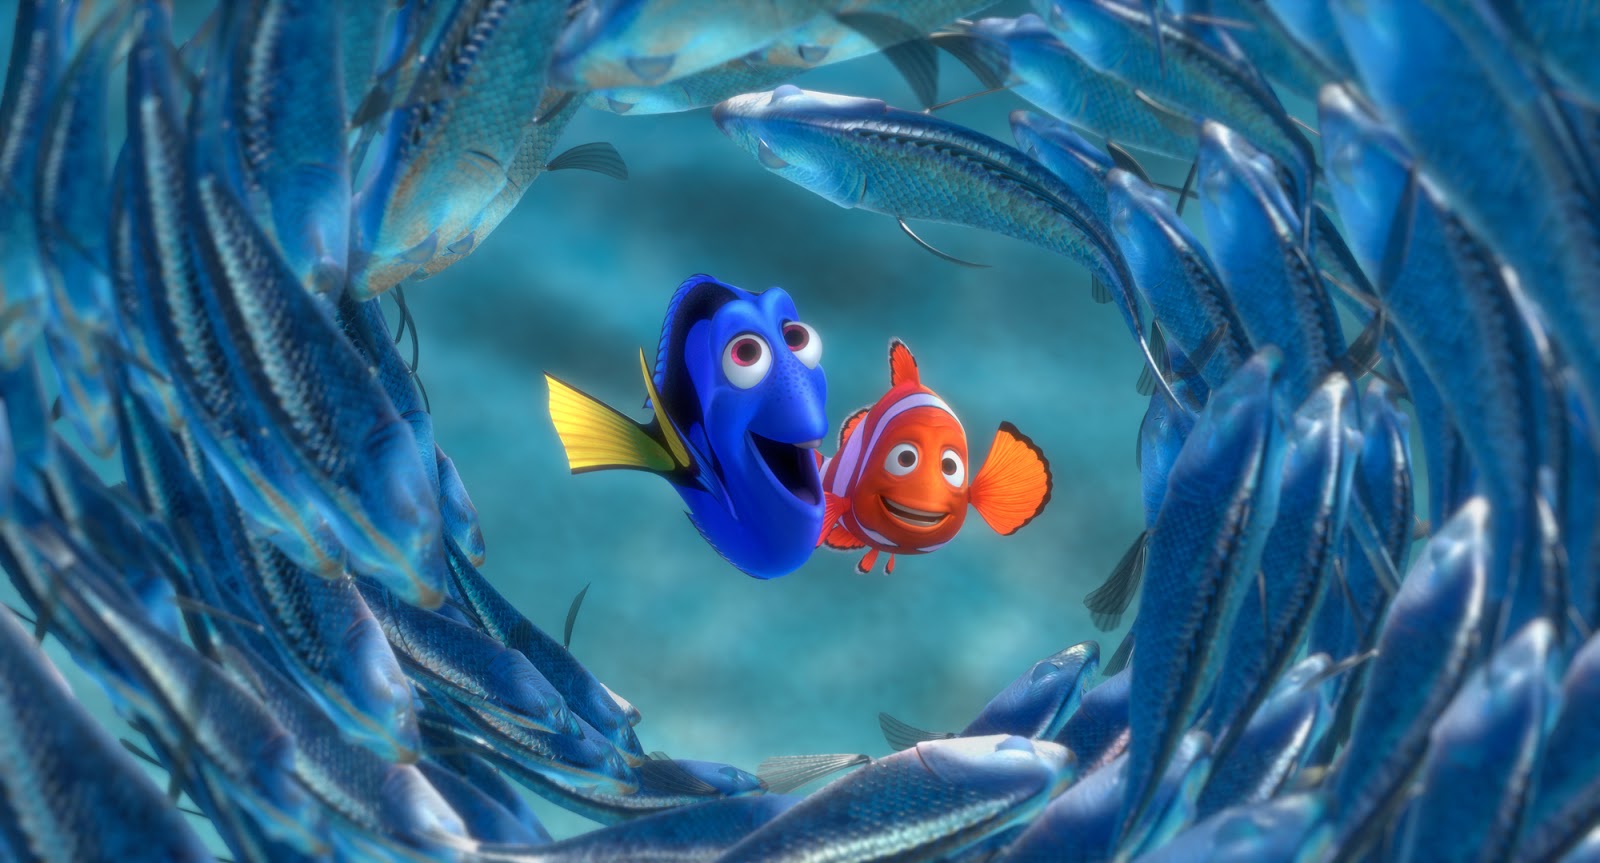 Finding Nemo 3D Dory Desktop Wallpapers 4031 - HD Wallpapers Site